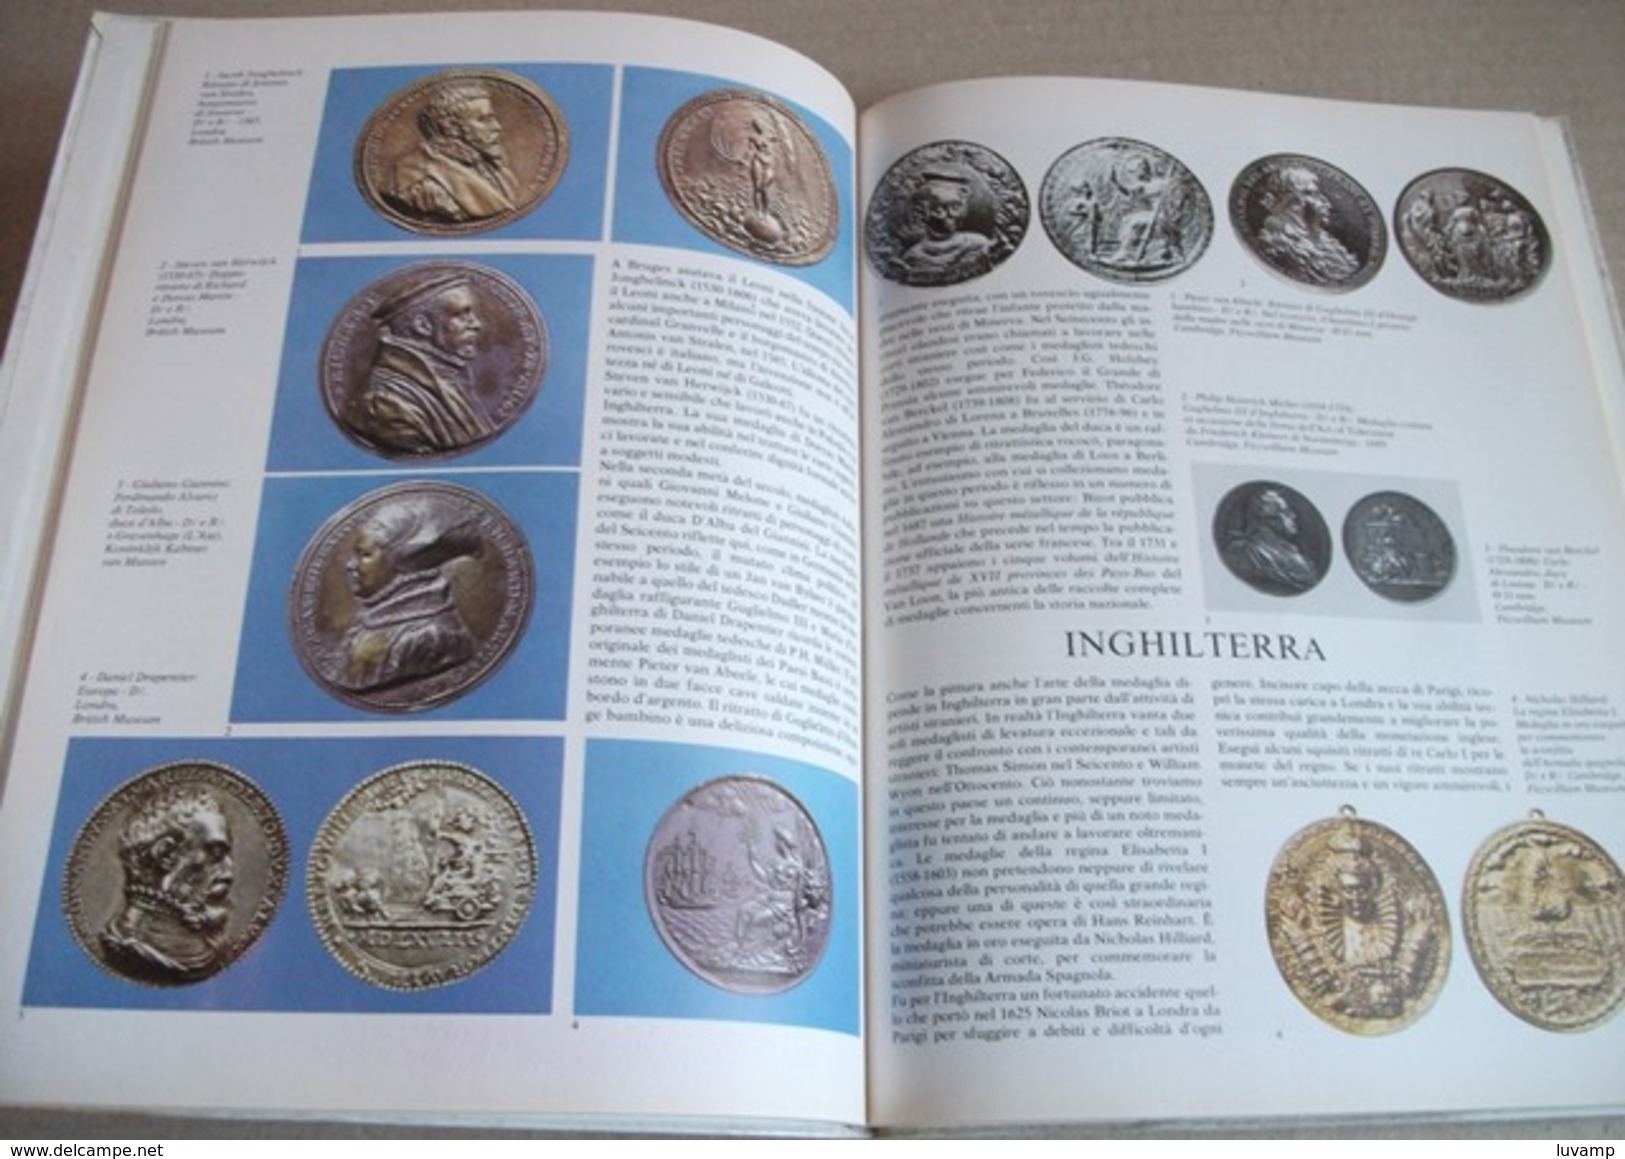 MEDAGLIE E MONETE -EDITORIALEW FABBRI 1981(150414) - Collections